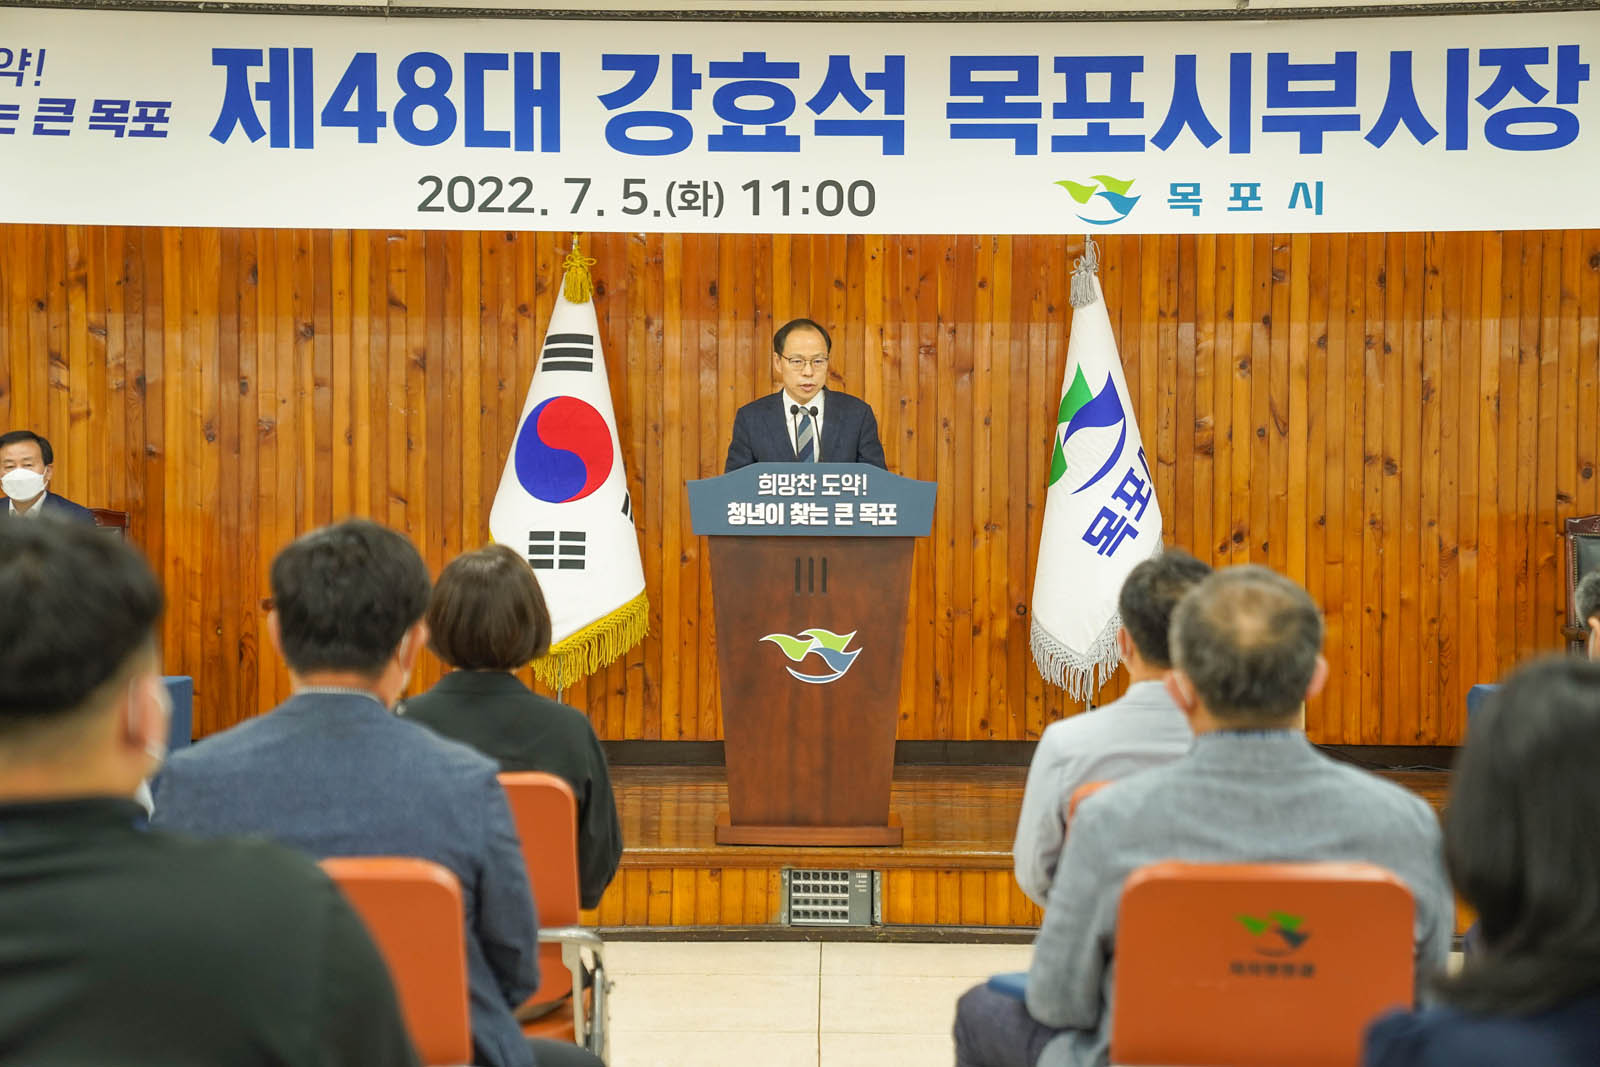 (07.05.회의실) 이임식에서 강효석 부시장이 연설하고 있다